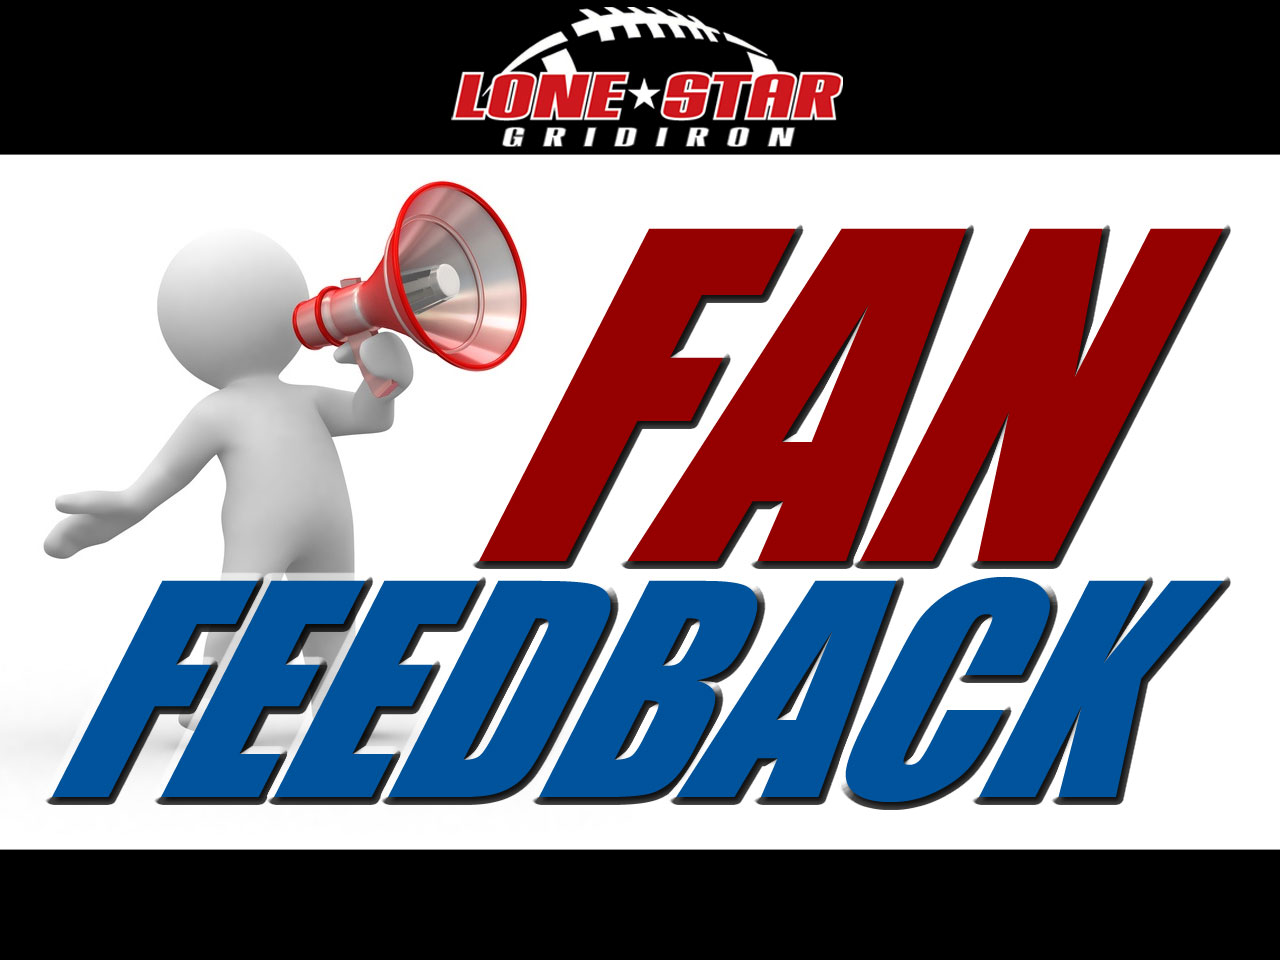 Texas high school football fan feedback - Lone Star Gridiron